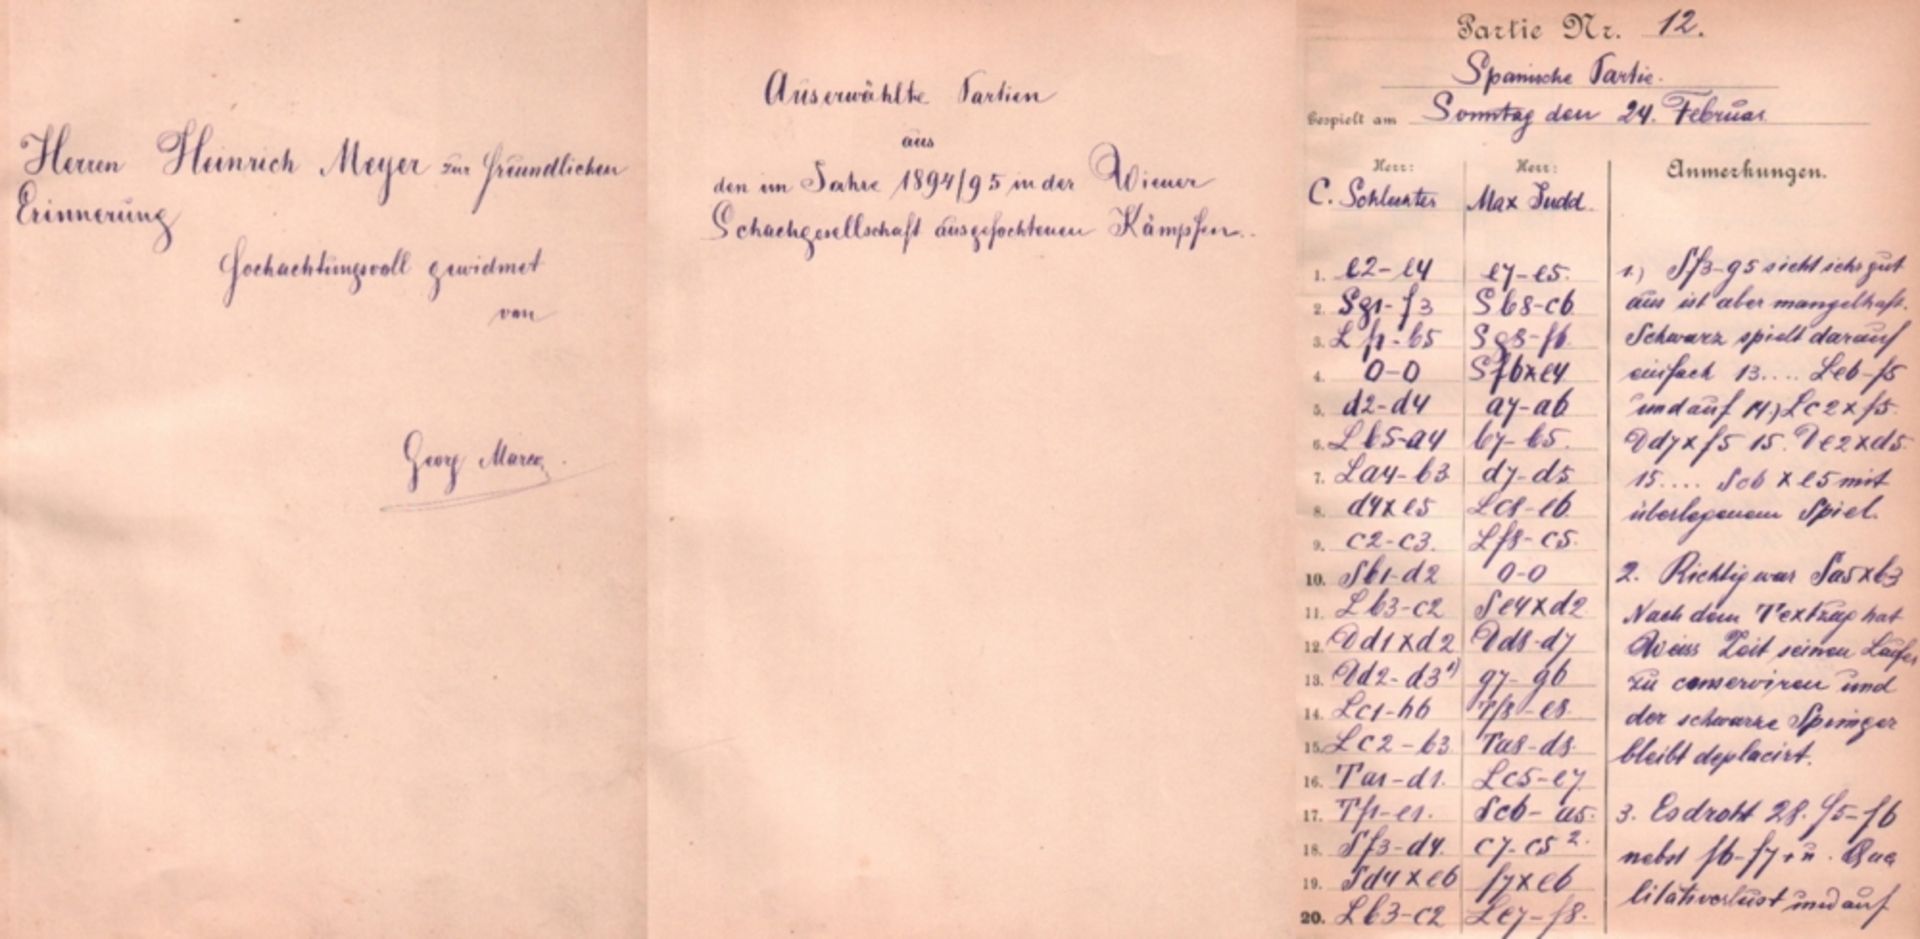 Wien 1895. Marco, Georg. Ausgewählte Partien aus den im Jahre 1894 / 95 in der Wiener